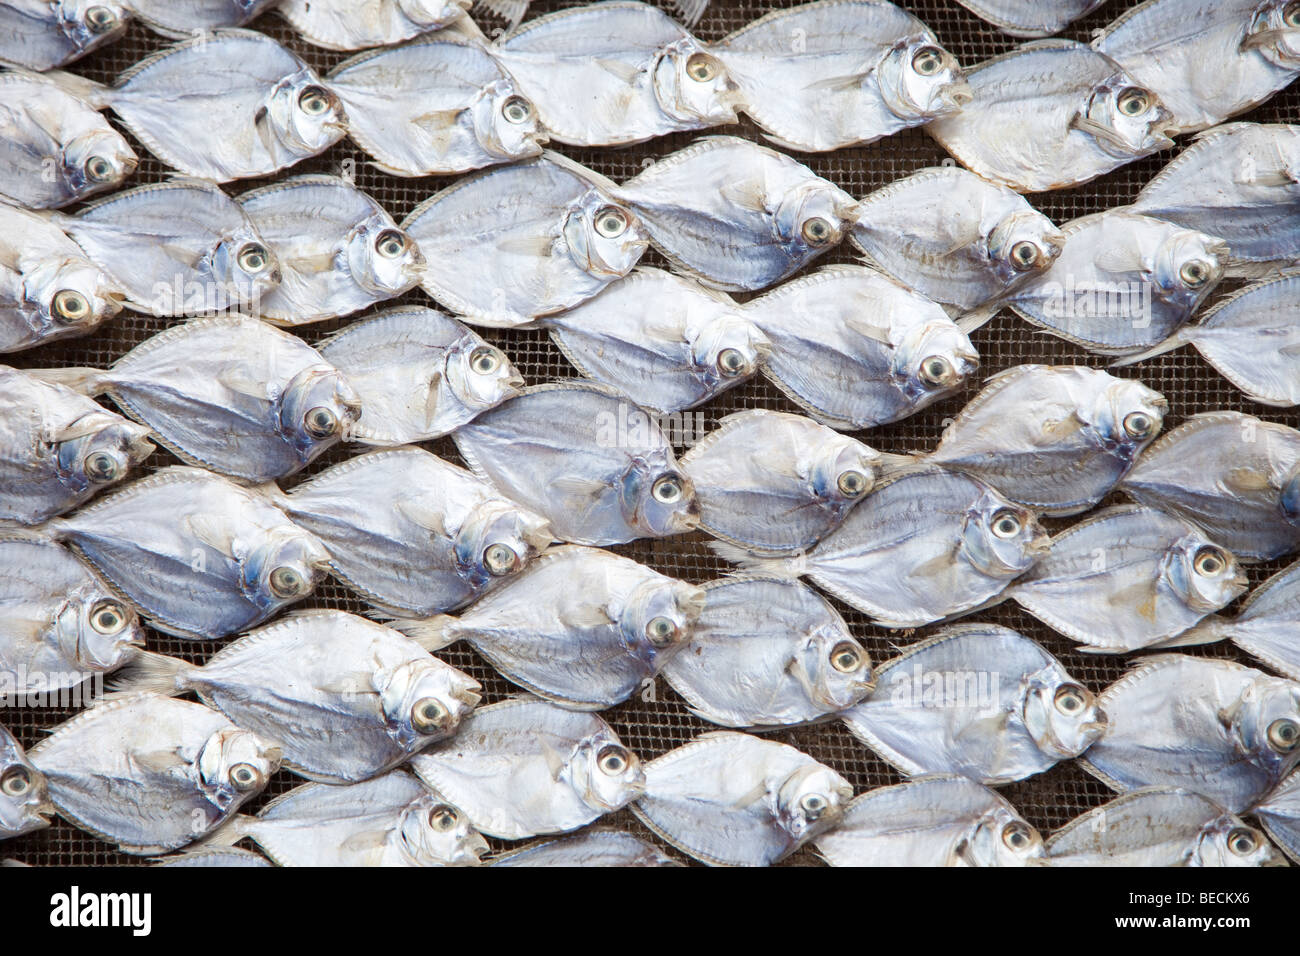 Façon traditionnelle de sécher le poisson en Indonésie Banque D'Images